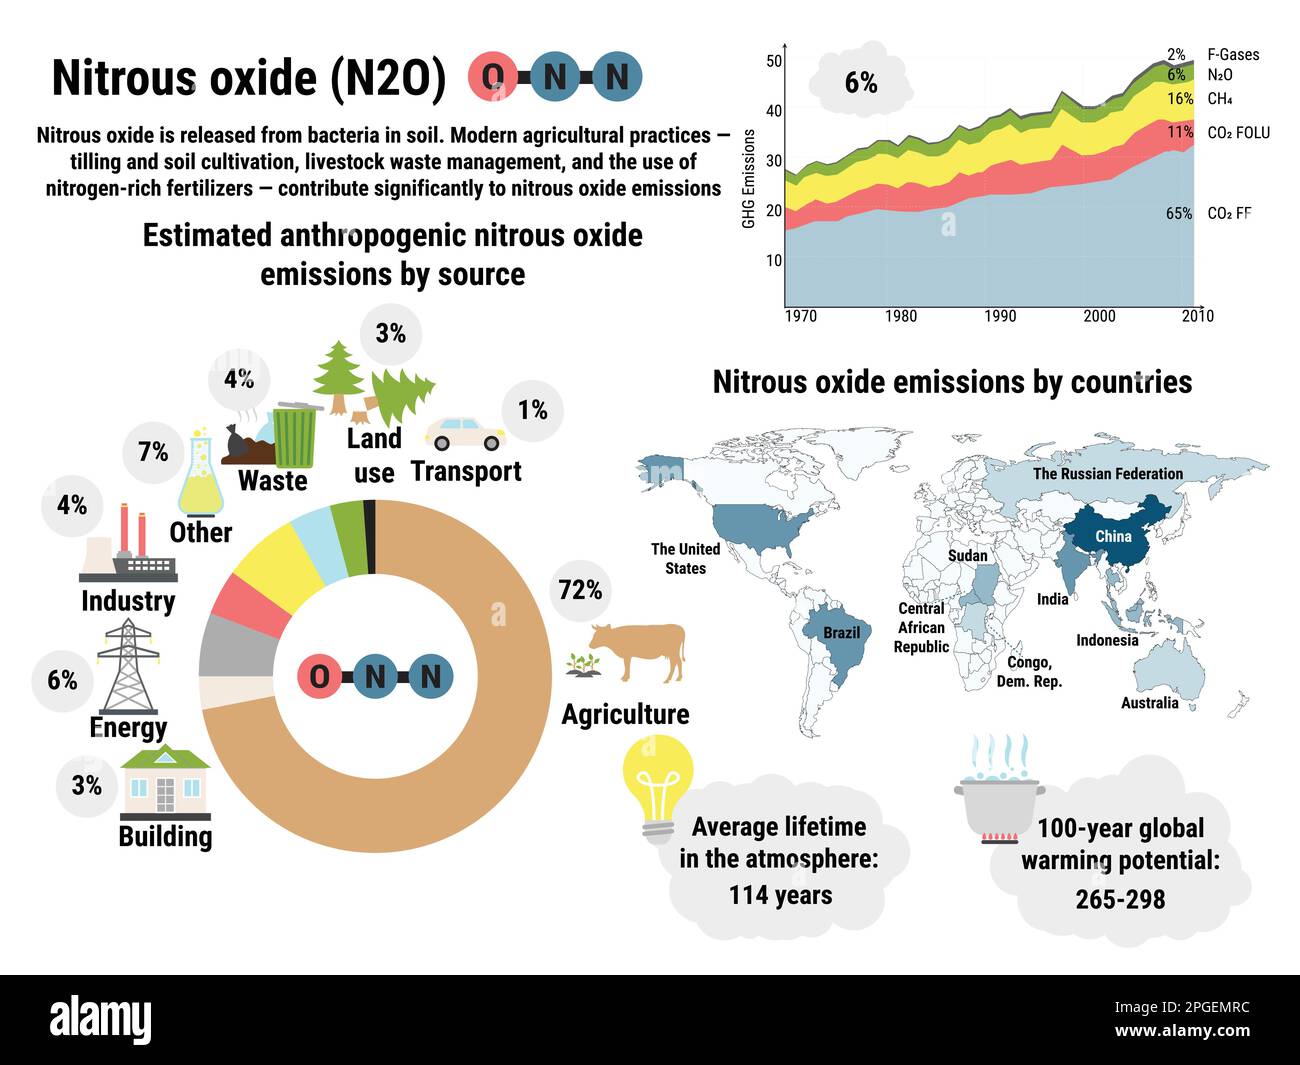 Infografica sulle emissioni globali di protossido di azoto da parte dei paesi. Emissioni di gas a effetto serra per settore economico. Inquinamento ambientale ecologico. Caldo globale Illustrazione Vettoriale